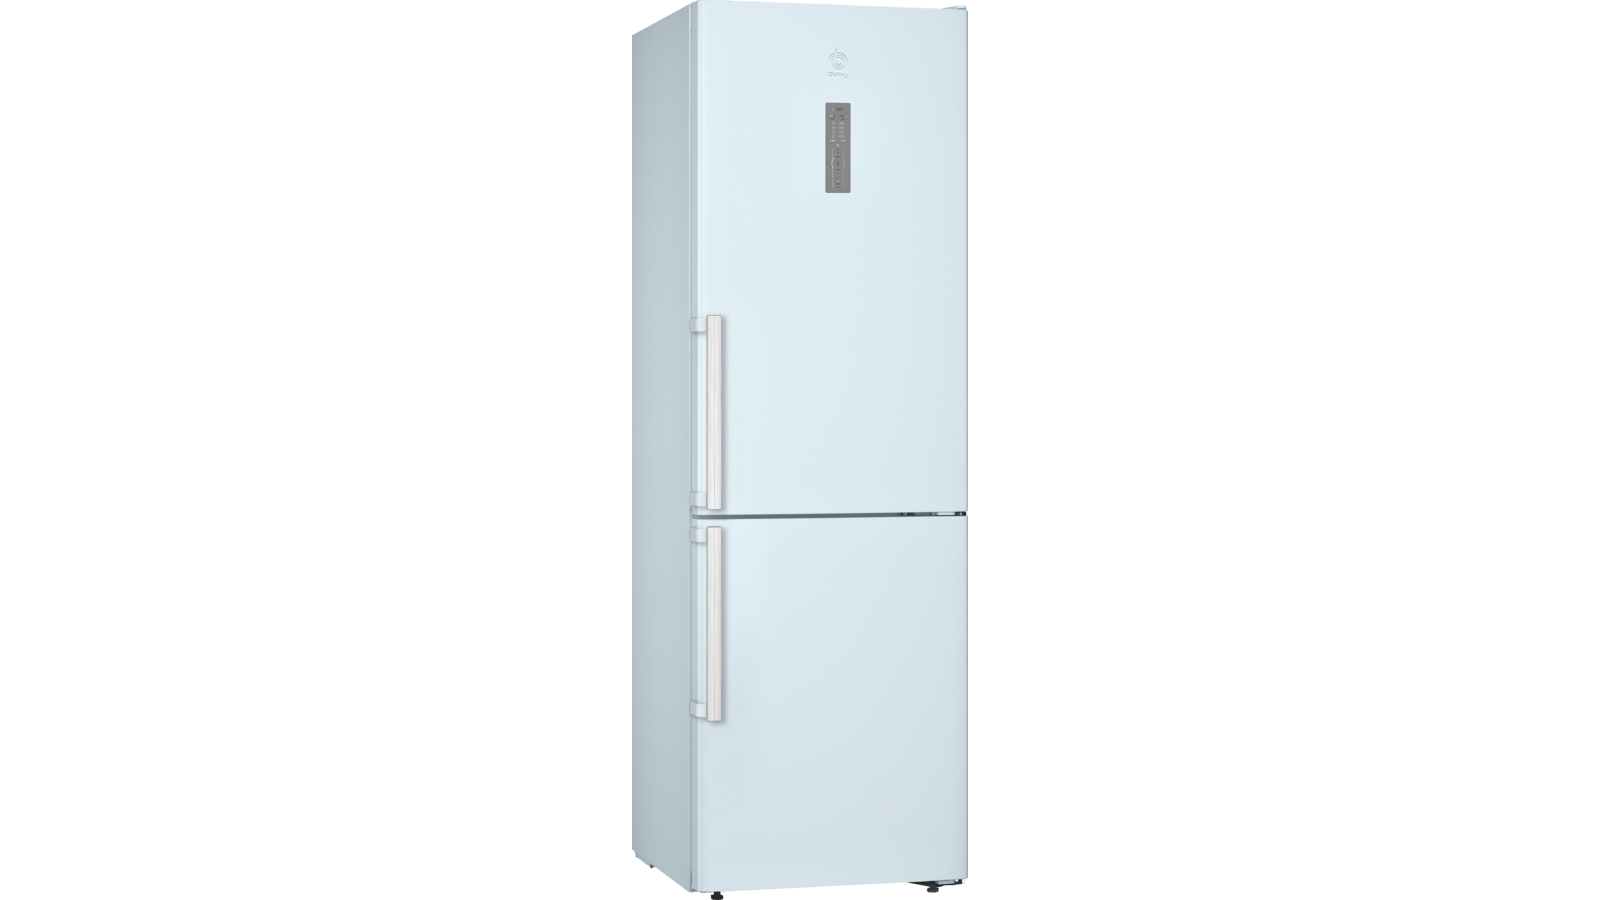 Compra económica, Balay 3KFE567WE frigorífico combi clase a++ 186x60 cm no  frost blanco